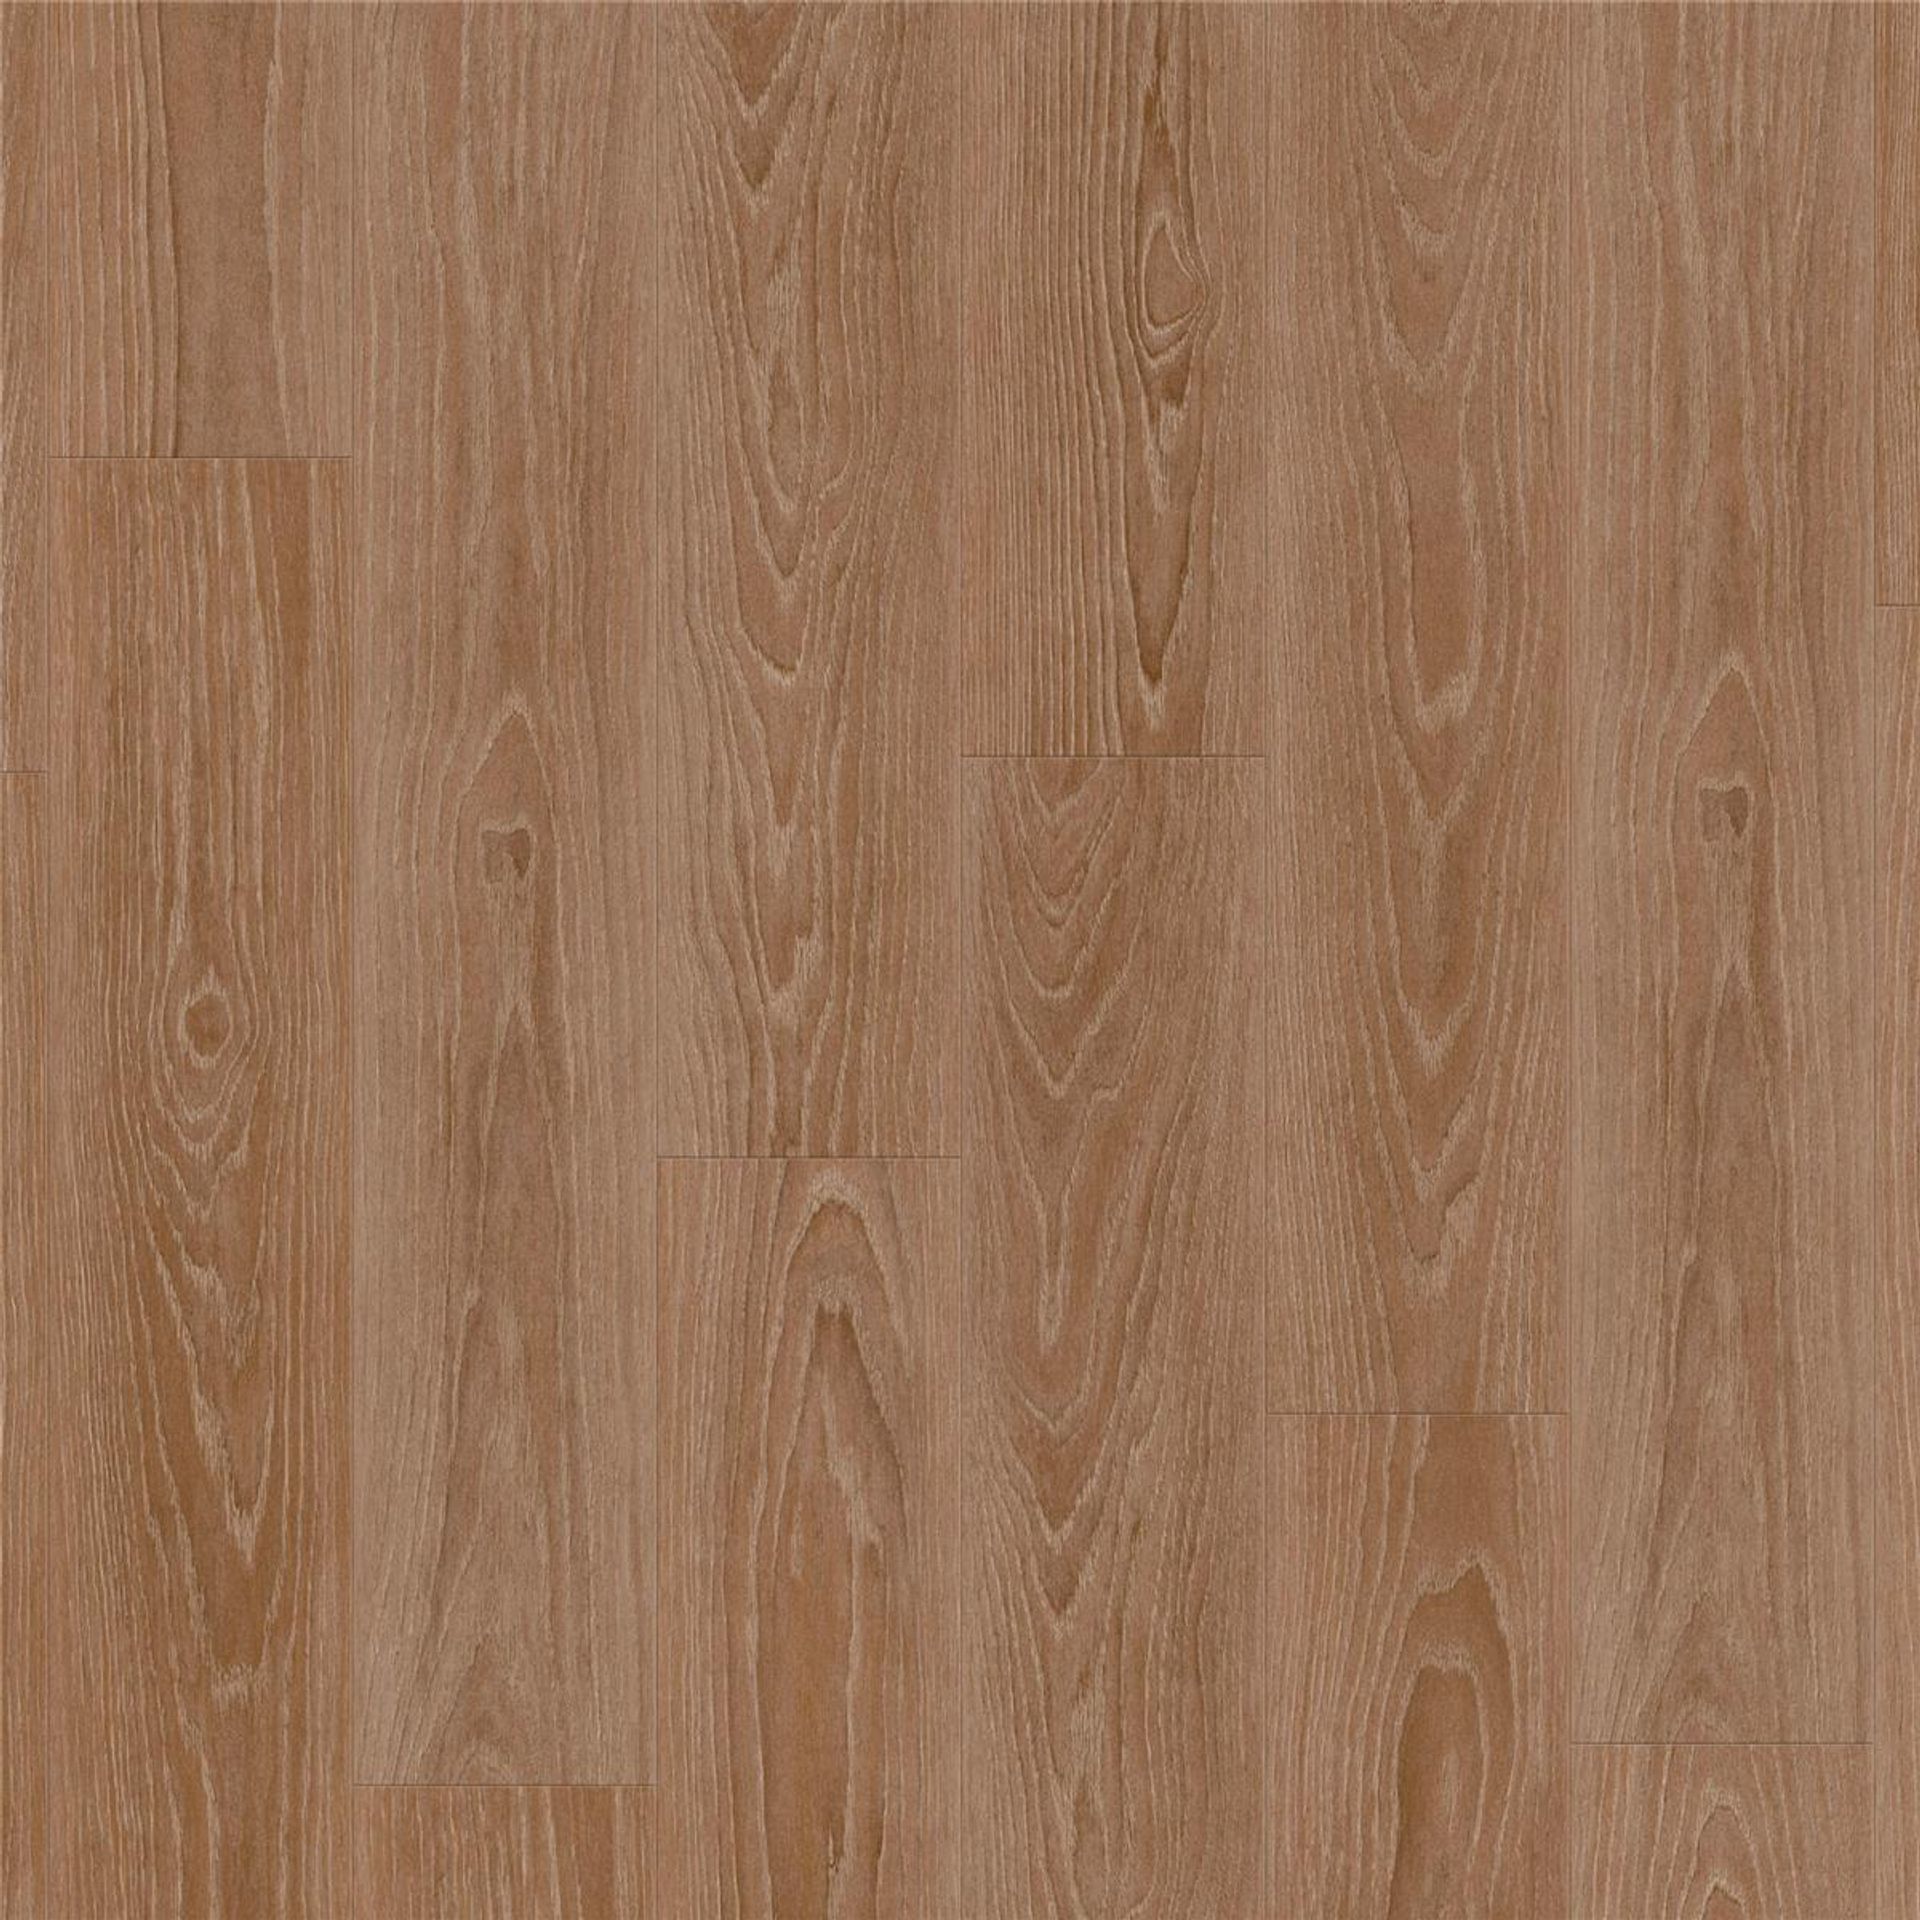 Designboden AUTHENTICS-Pearl Oak-Candis Planke 121,1 cm x 19,05 cm - Nutzschichtdicke 0,30 mm